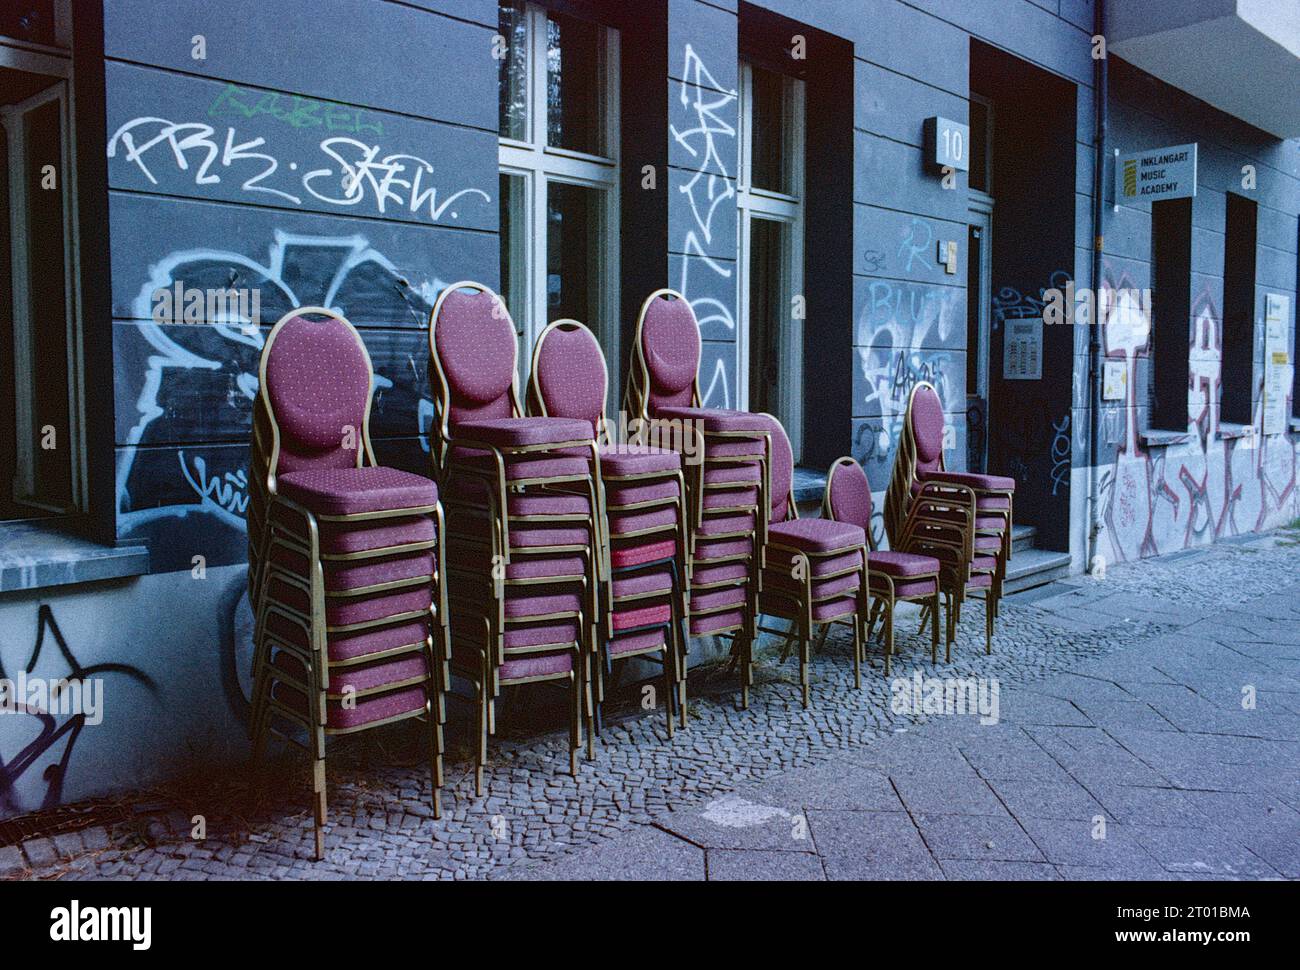 Stühle für das Publikum gleich draußen, auf dem Bürgersteig, der InKlangArt Music Academy. Berlin, Deutschland. Bild auf analogem, altem Kodak Film. Stockfoto